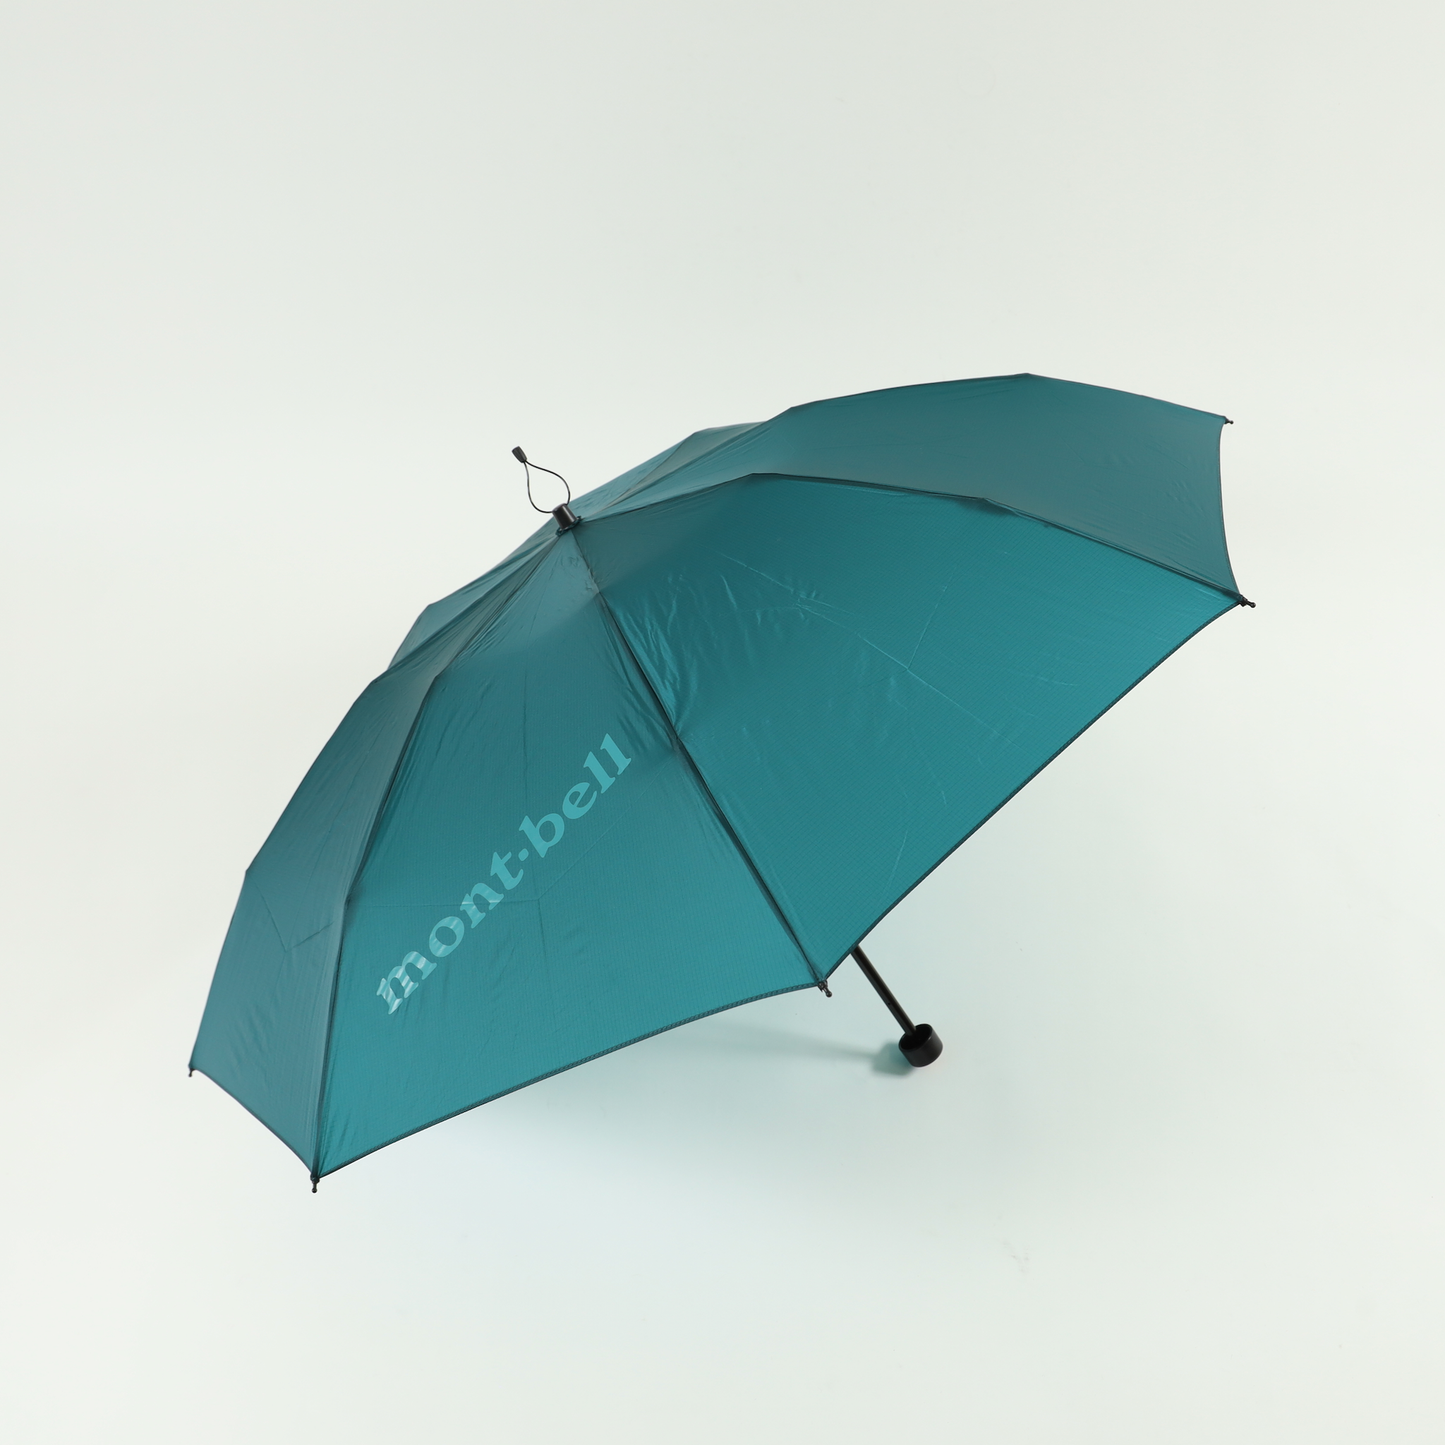 【mont-bell】Long Tail Trekking Umbrella